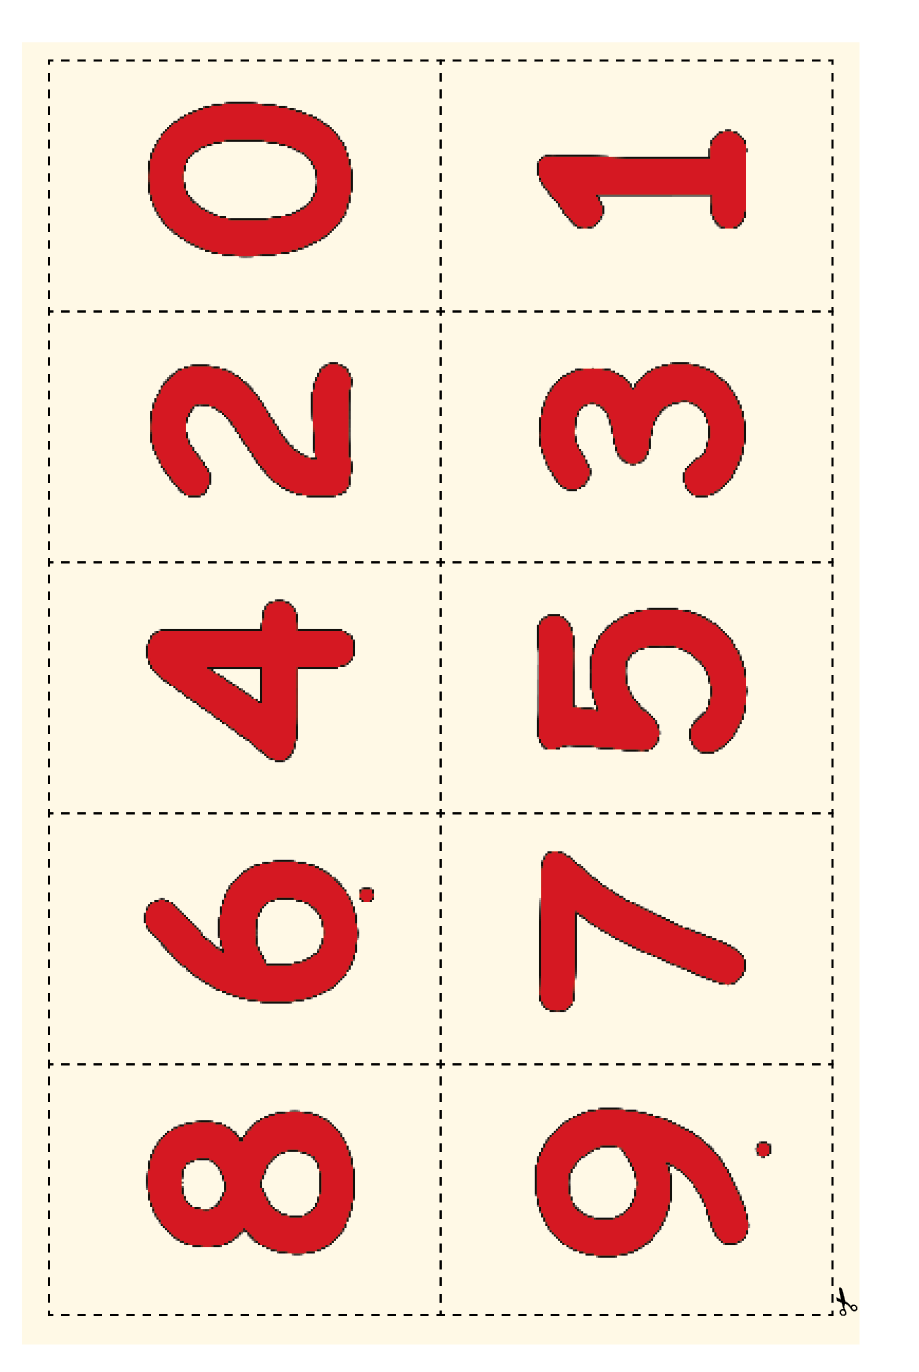 Imagem: Ilustração. Cartas com os números: 0, 1, 2, 3, 4, 5, 6, 7, 8, 9. Em volta de cada carta há linhas pontilhadas para recortar. Fim da imagem.